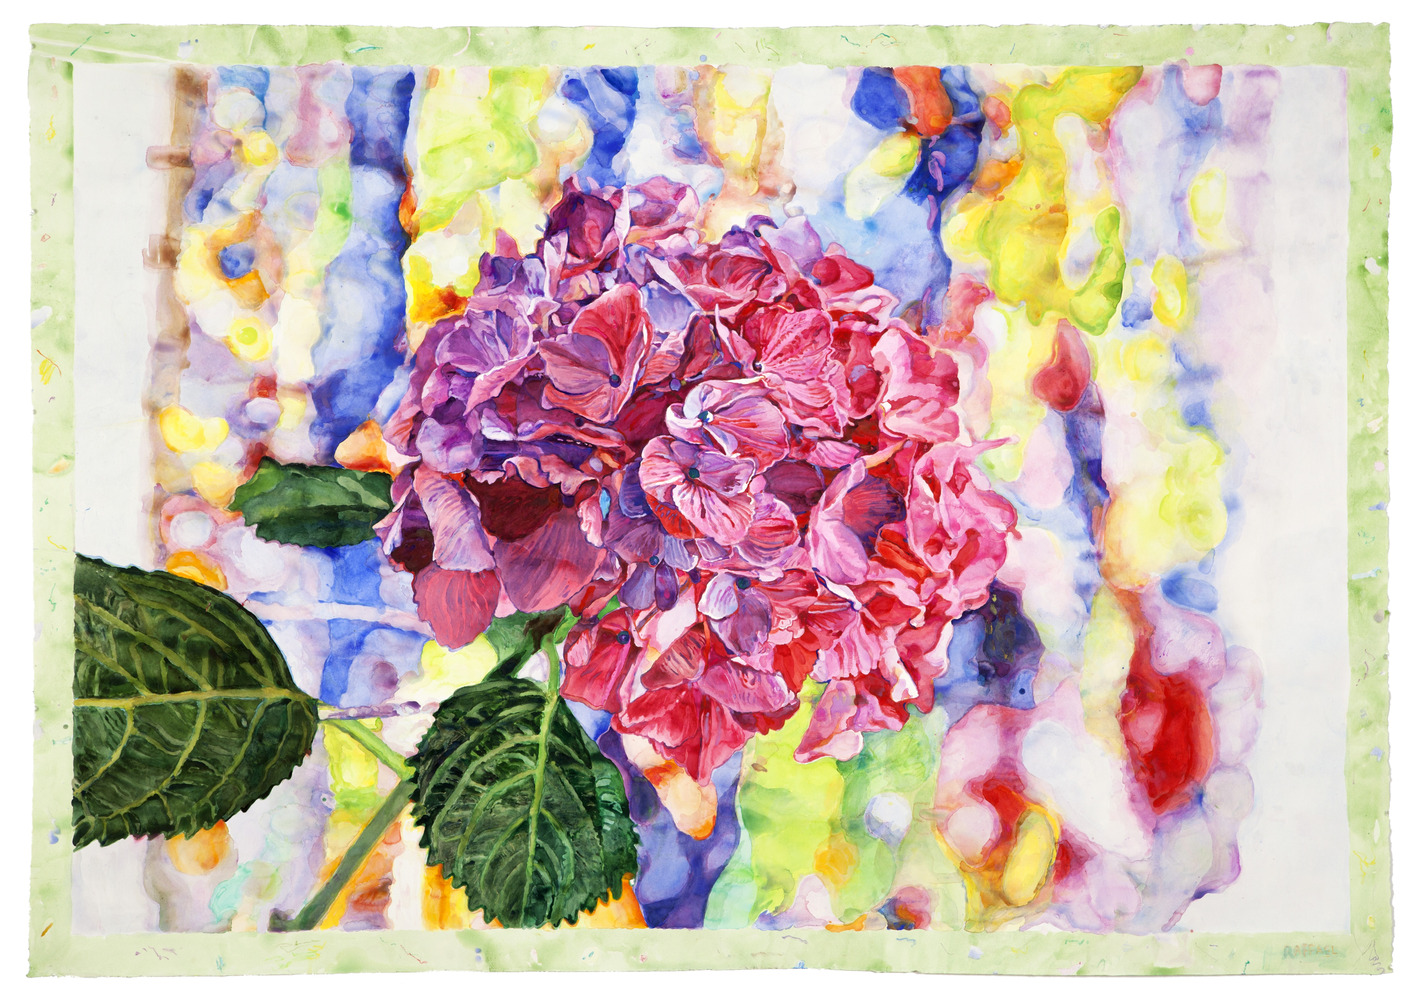 Flower Dream - Aquarell auf Papier by Joseph Raffael